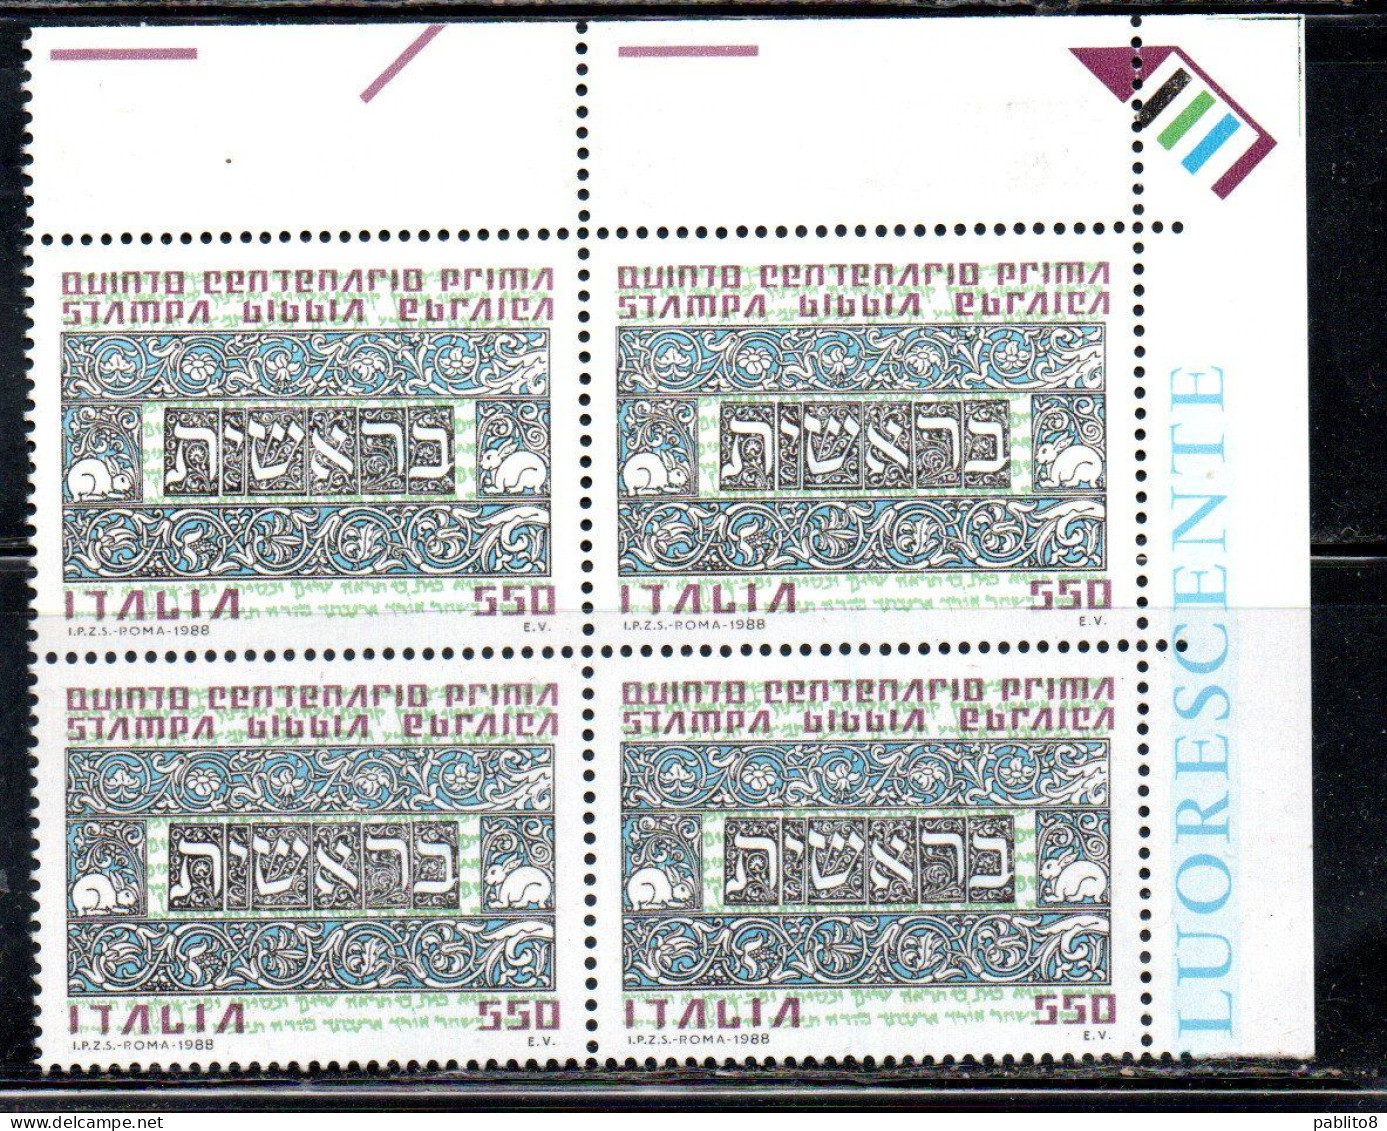 ITALIA REPUBBLICA ITALY REPUBLIC 1988 PRIMA STAMPA BIBBIA EBRAICA QUARTINA ANGOLO DI FOGLIO BLOCK MNH - 1981-90: Mint/hinged